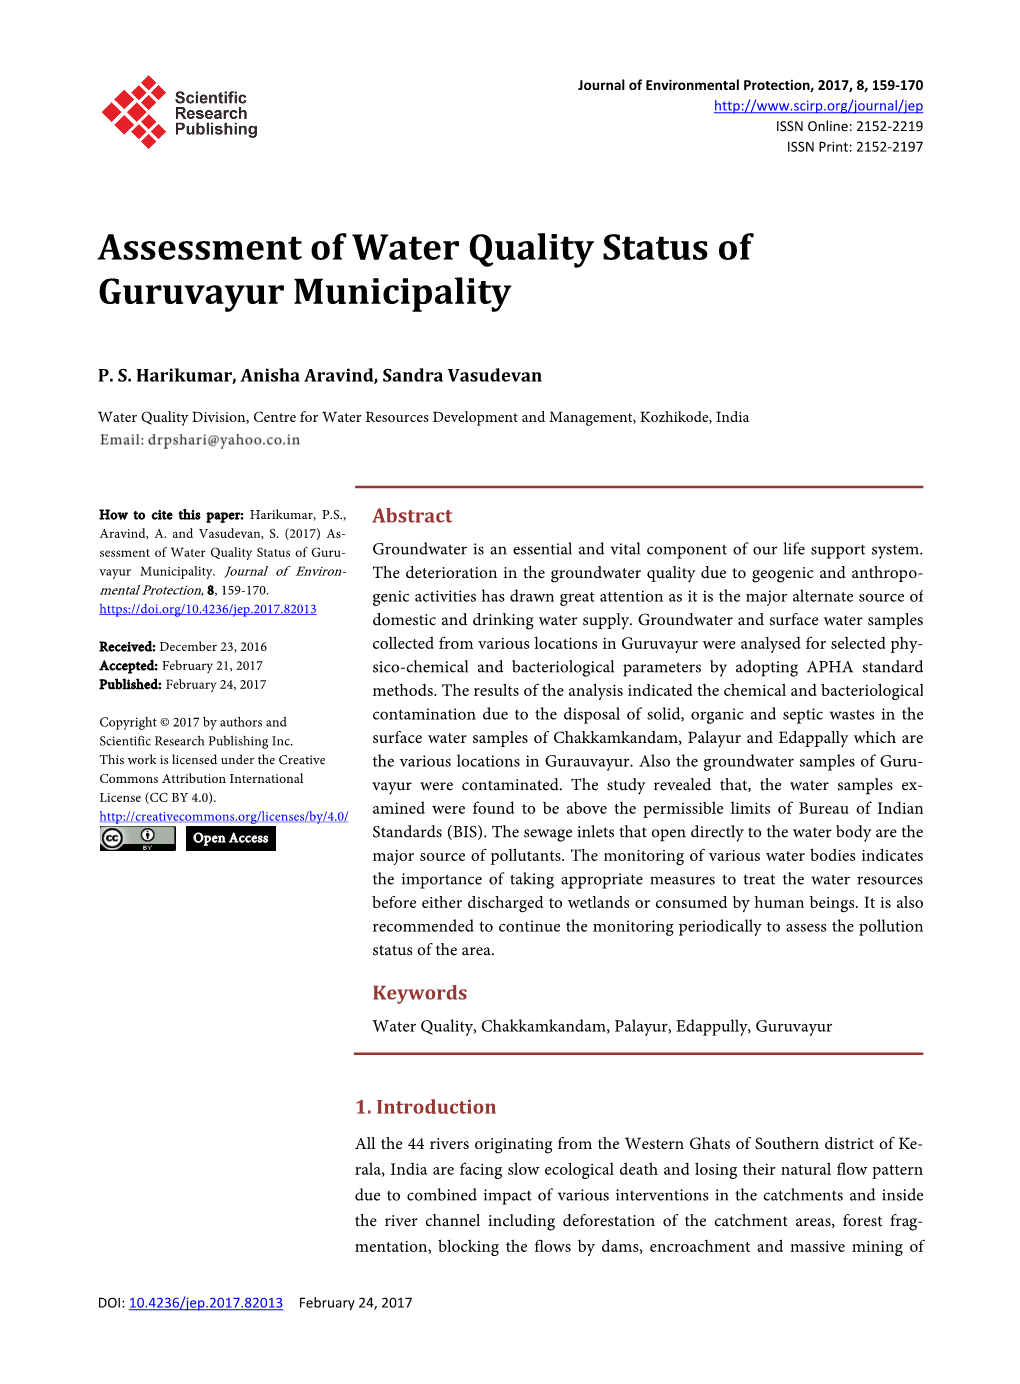 Assessment of Water Quality Status of Guruvayur Municipality